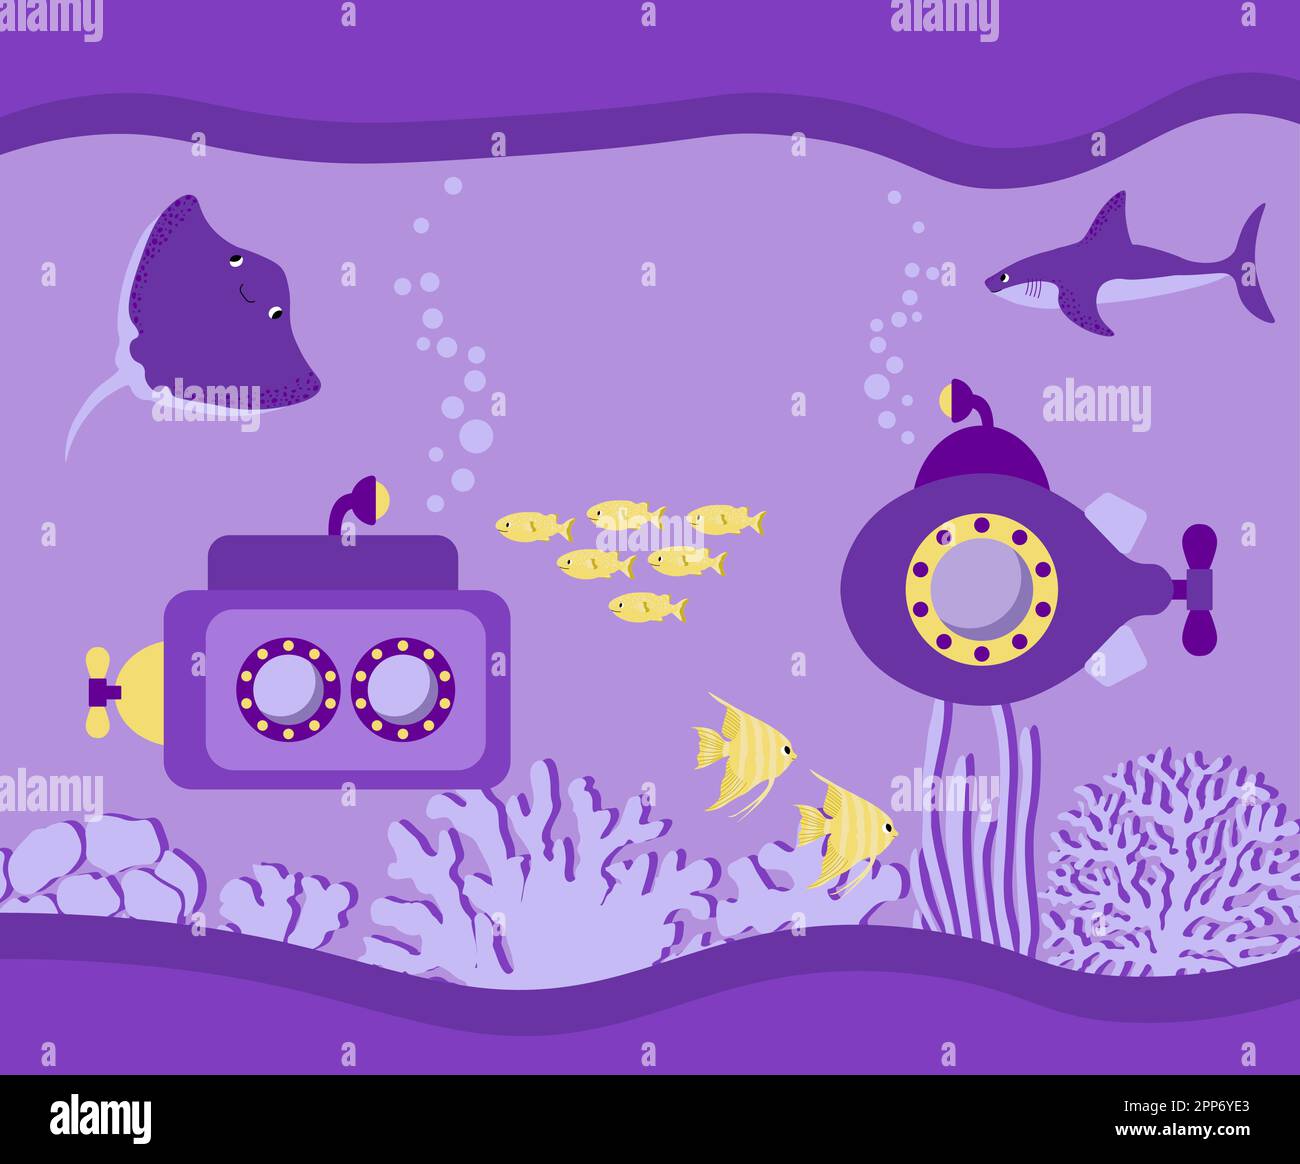 Vektor-Ozean-Illustration mit U-Boot, Hai, Teufelsfisch, Fisch, Algen, Korallen. Unterwassertiere. Ökologie-Design für Banner, Flyer, Postkarten Stock Vektor